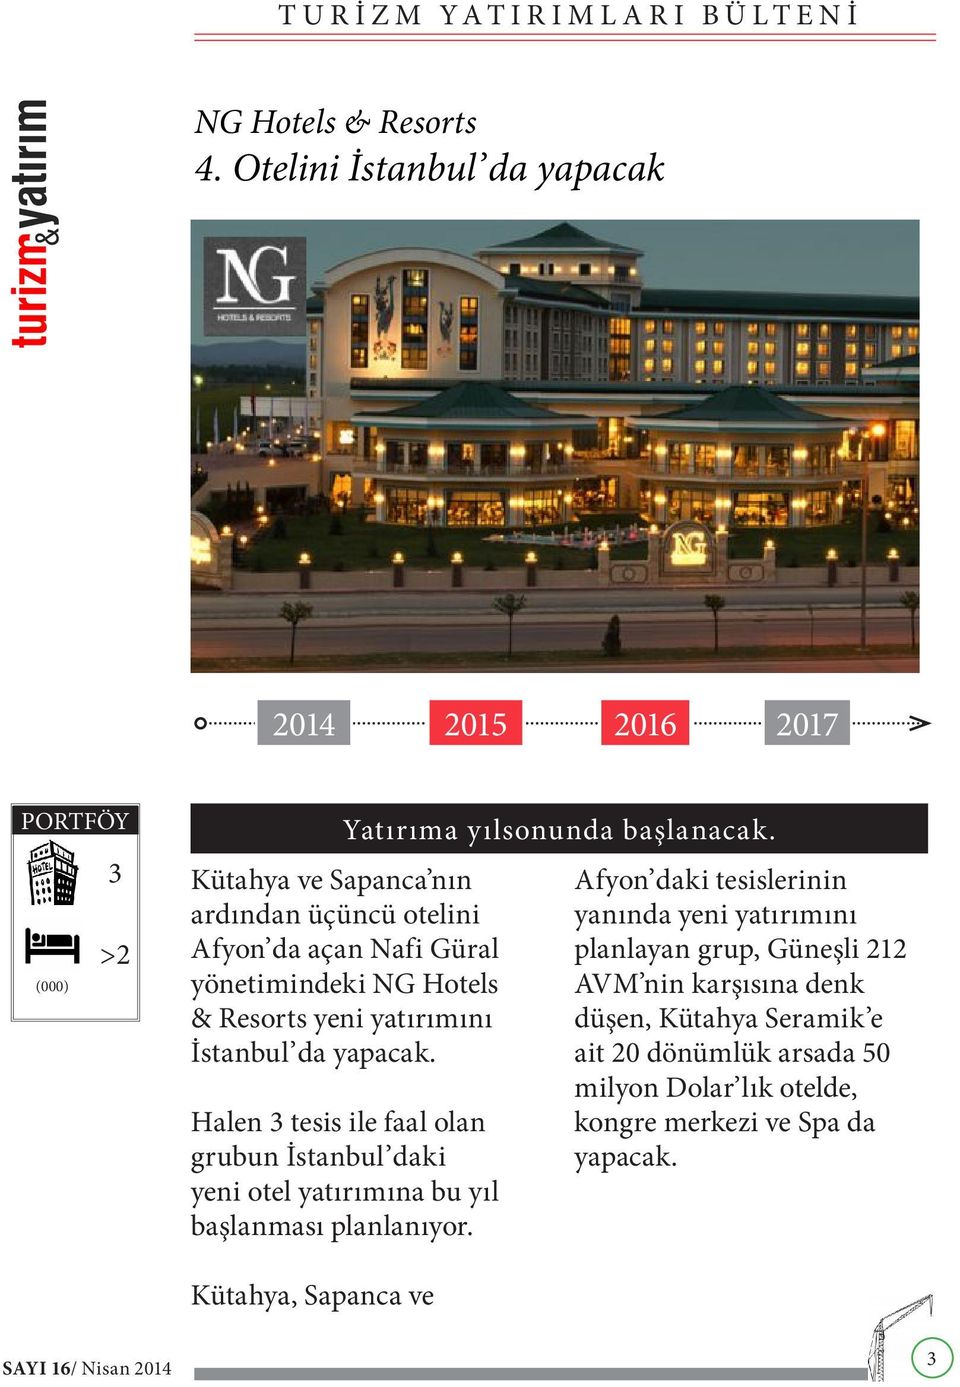 Halen 3 tesis ile faal olan grubun İstanbul daki yeni otel yatırımına bu yıl başlanması planlanıyor.